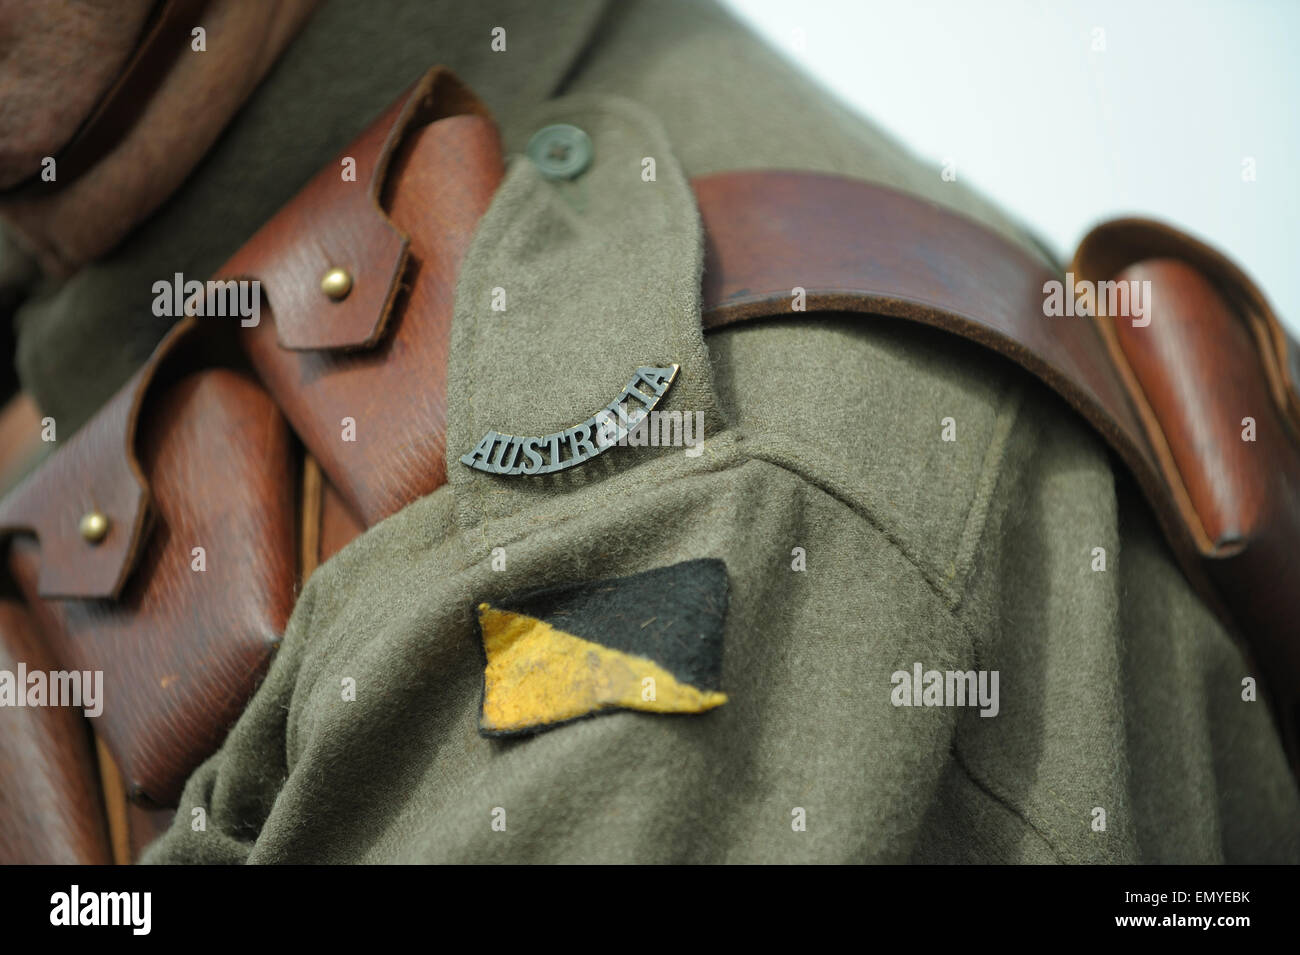 La Seconde Guerre mondiale, un uniforme de l'armée australienne, avec 10e Light Horse Regiment patch de couleur de l'unité (insigne). Banque D'Images